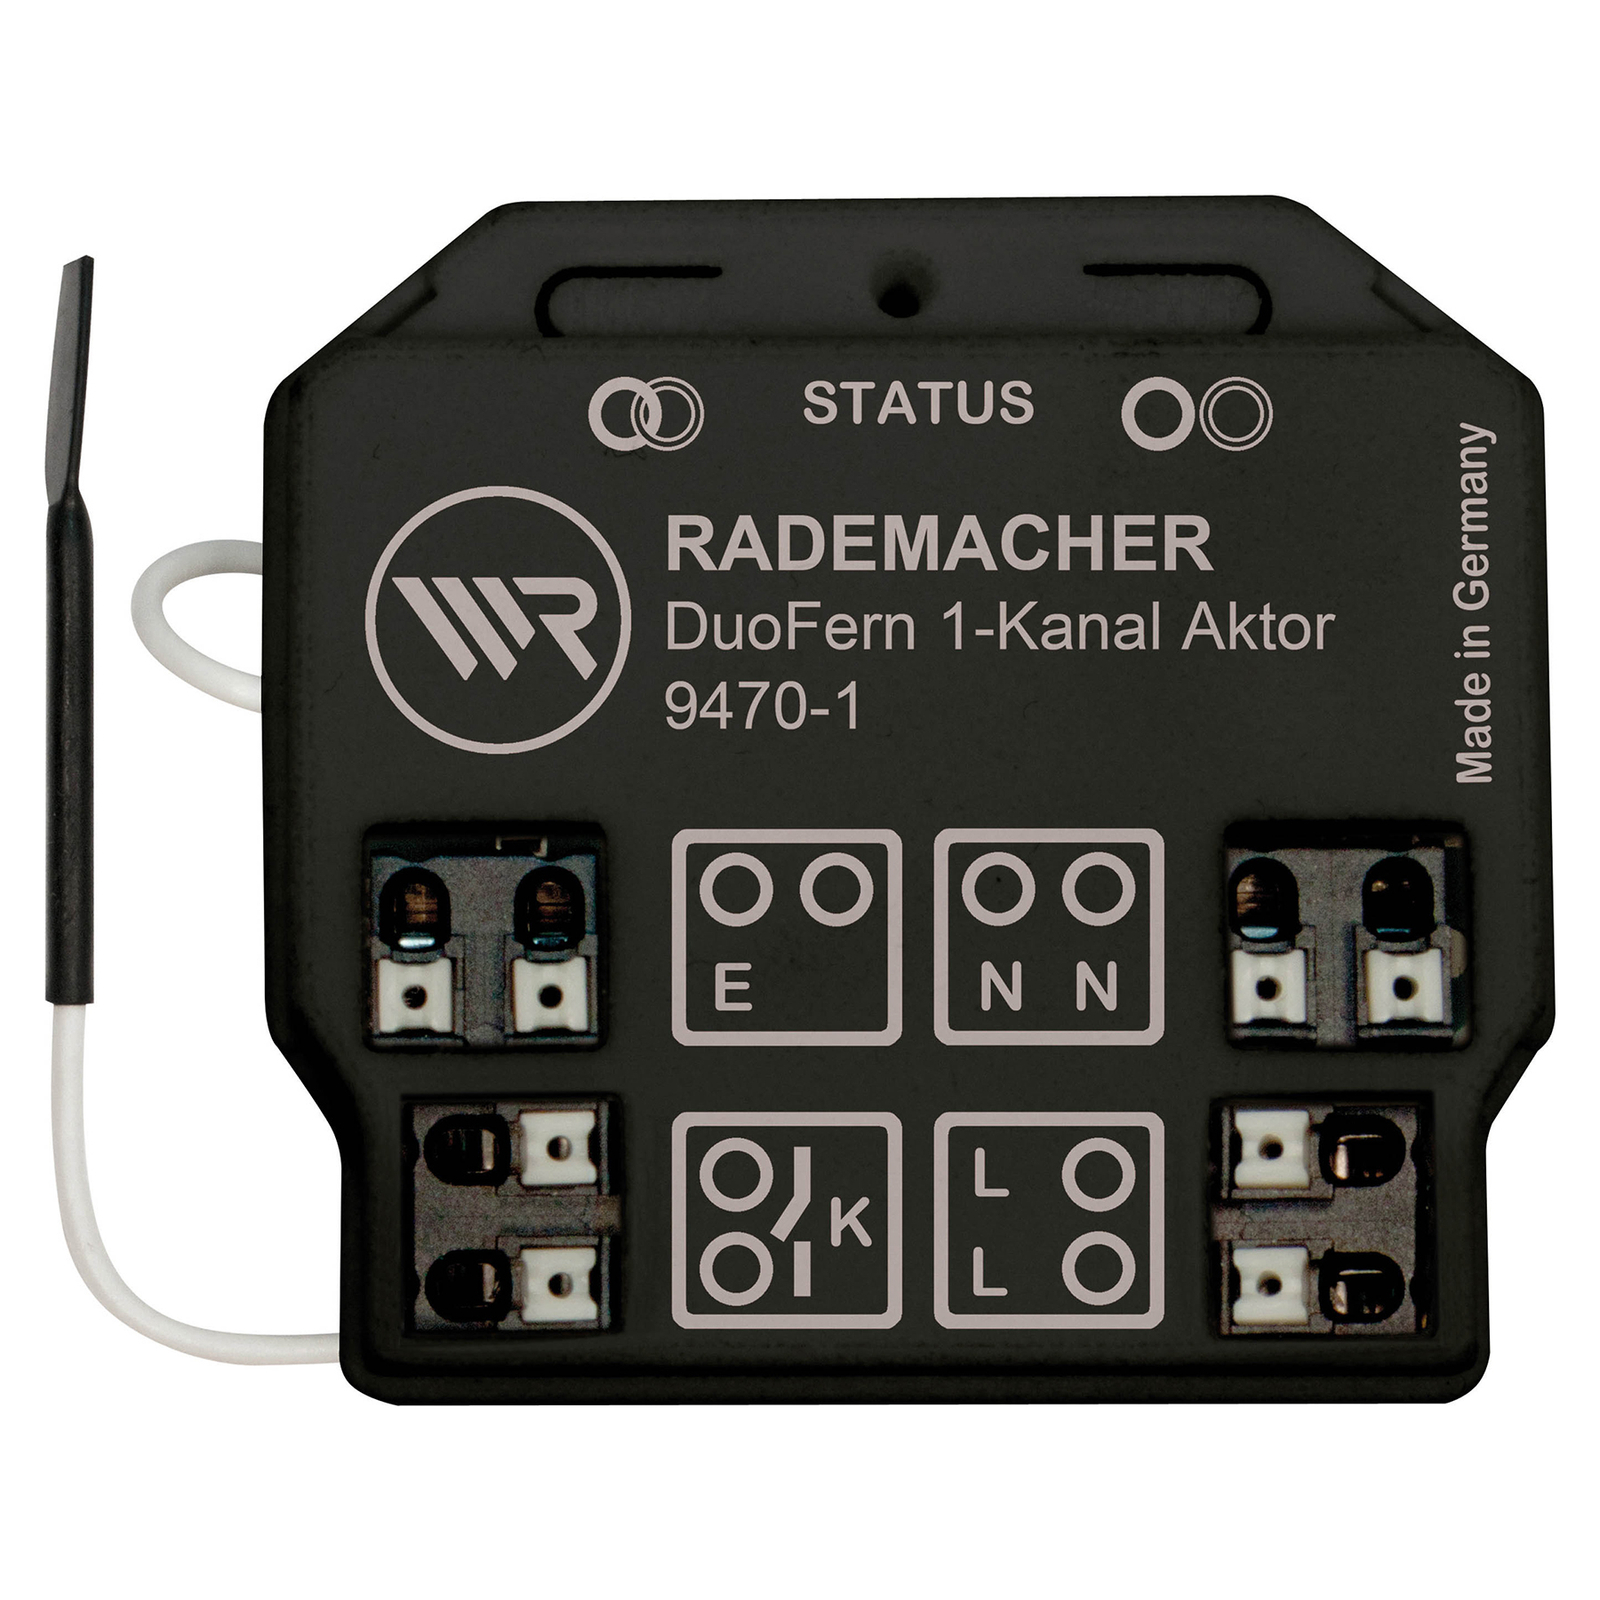 Rademacher DuoFern univerzális aktor 1 x 3600 W